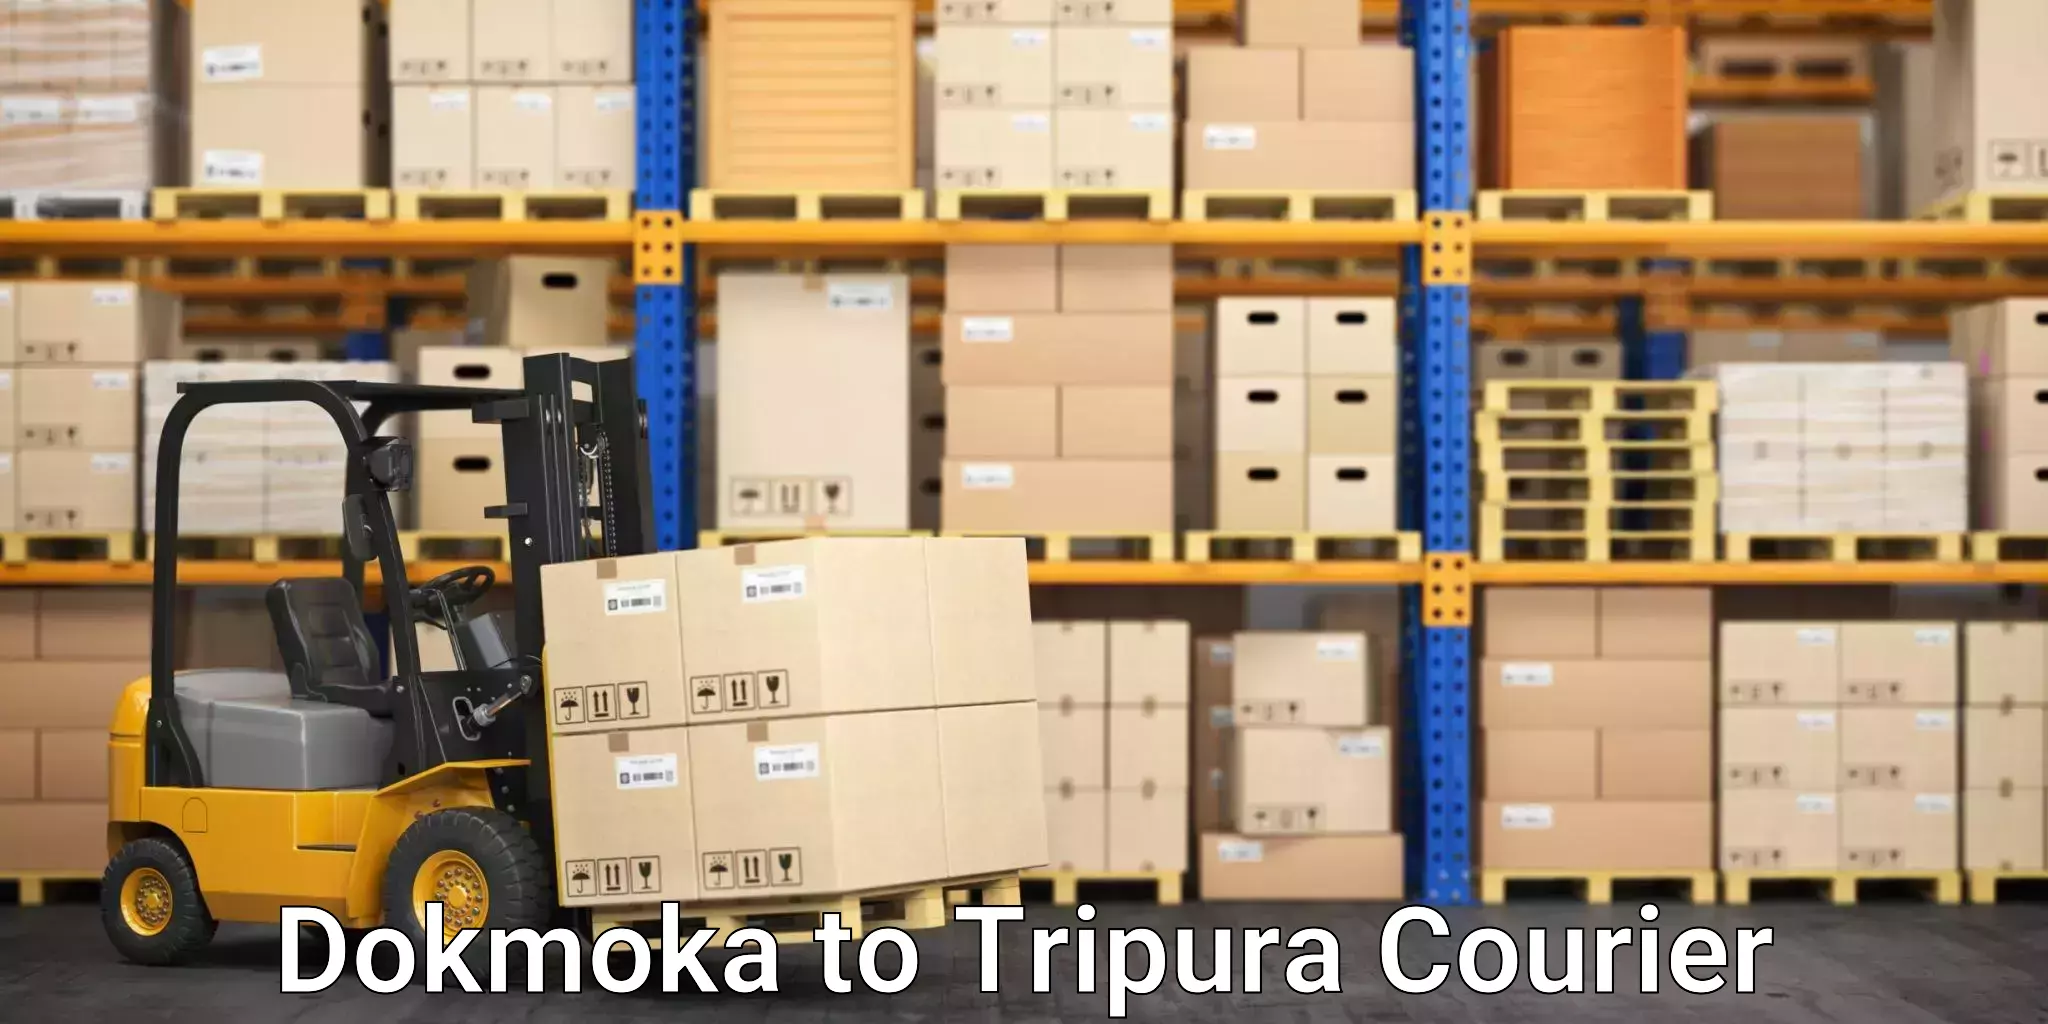 Next-day freight services Dokmoka to Udaipur Tripura